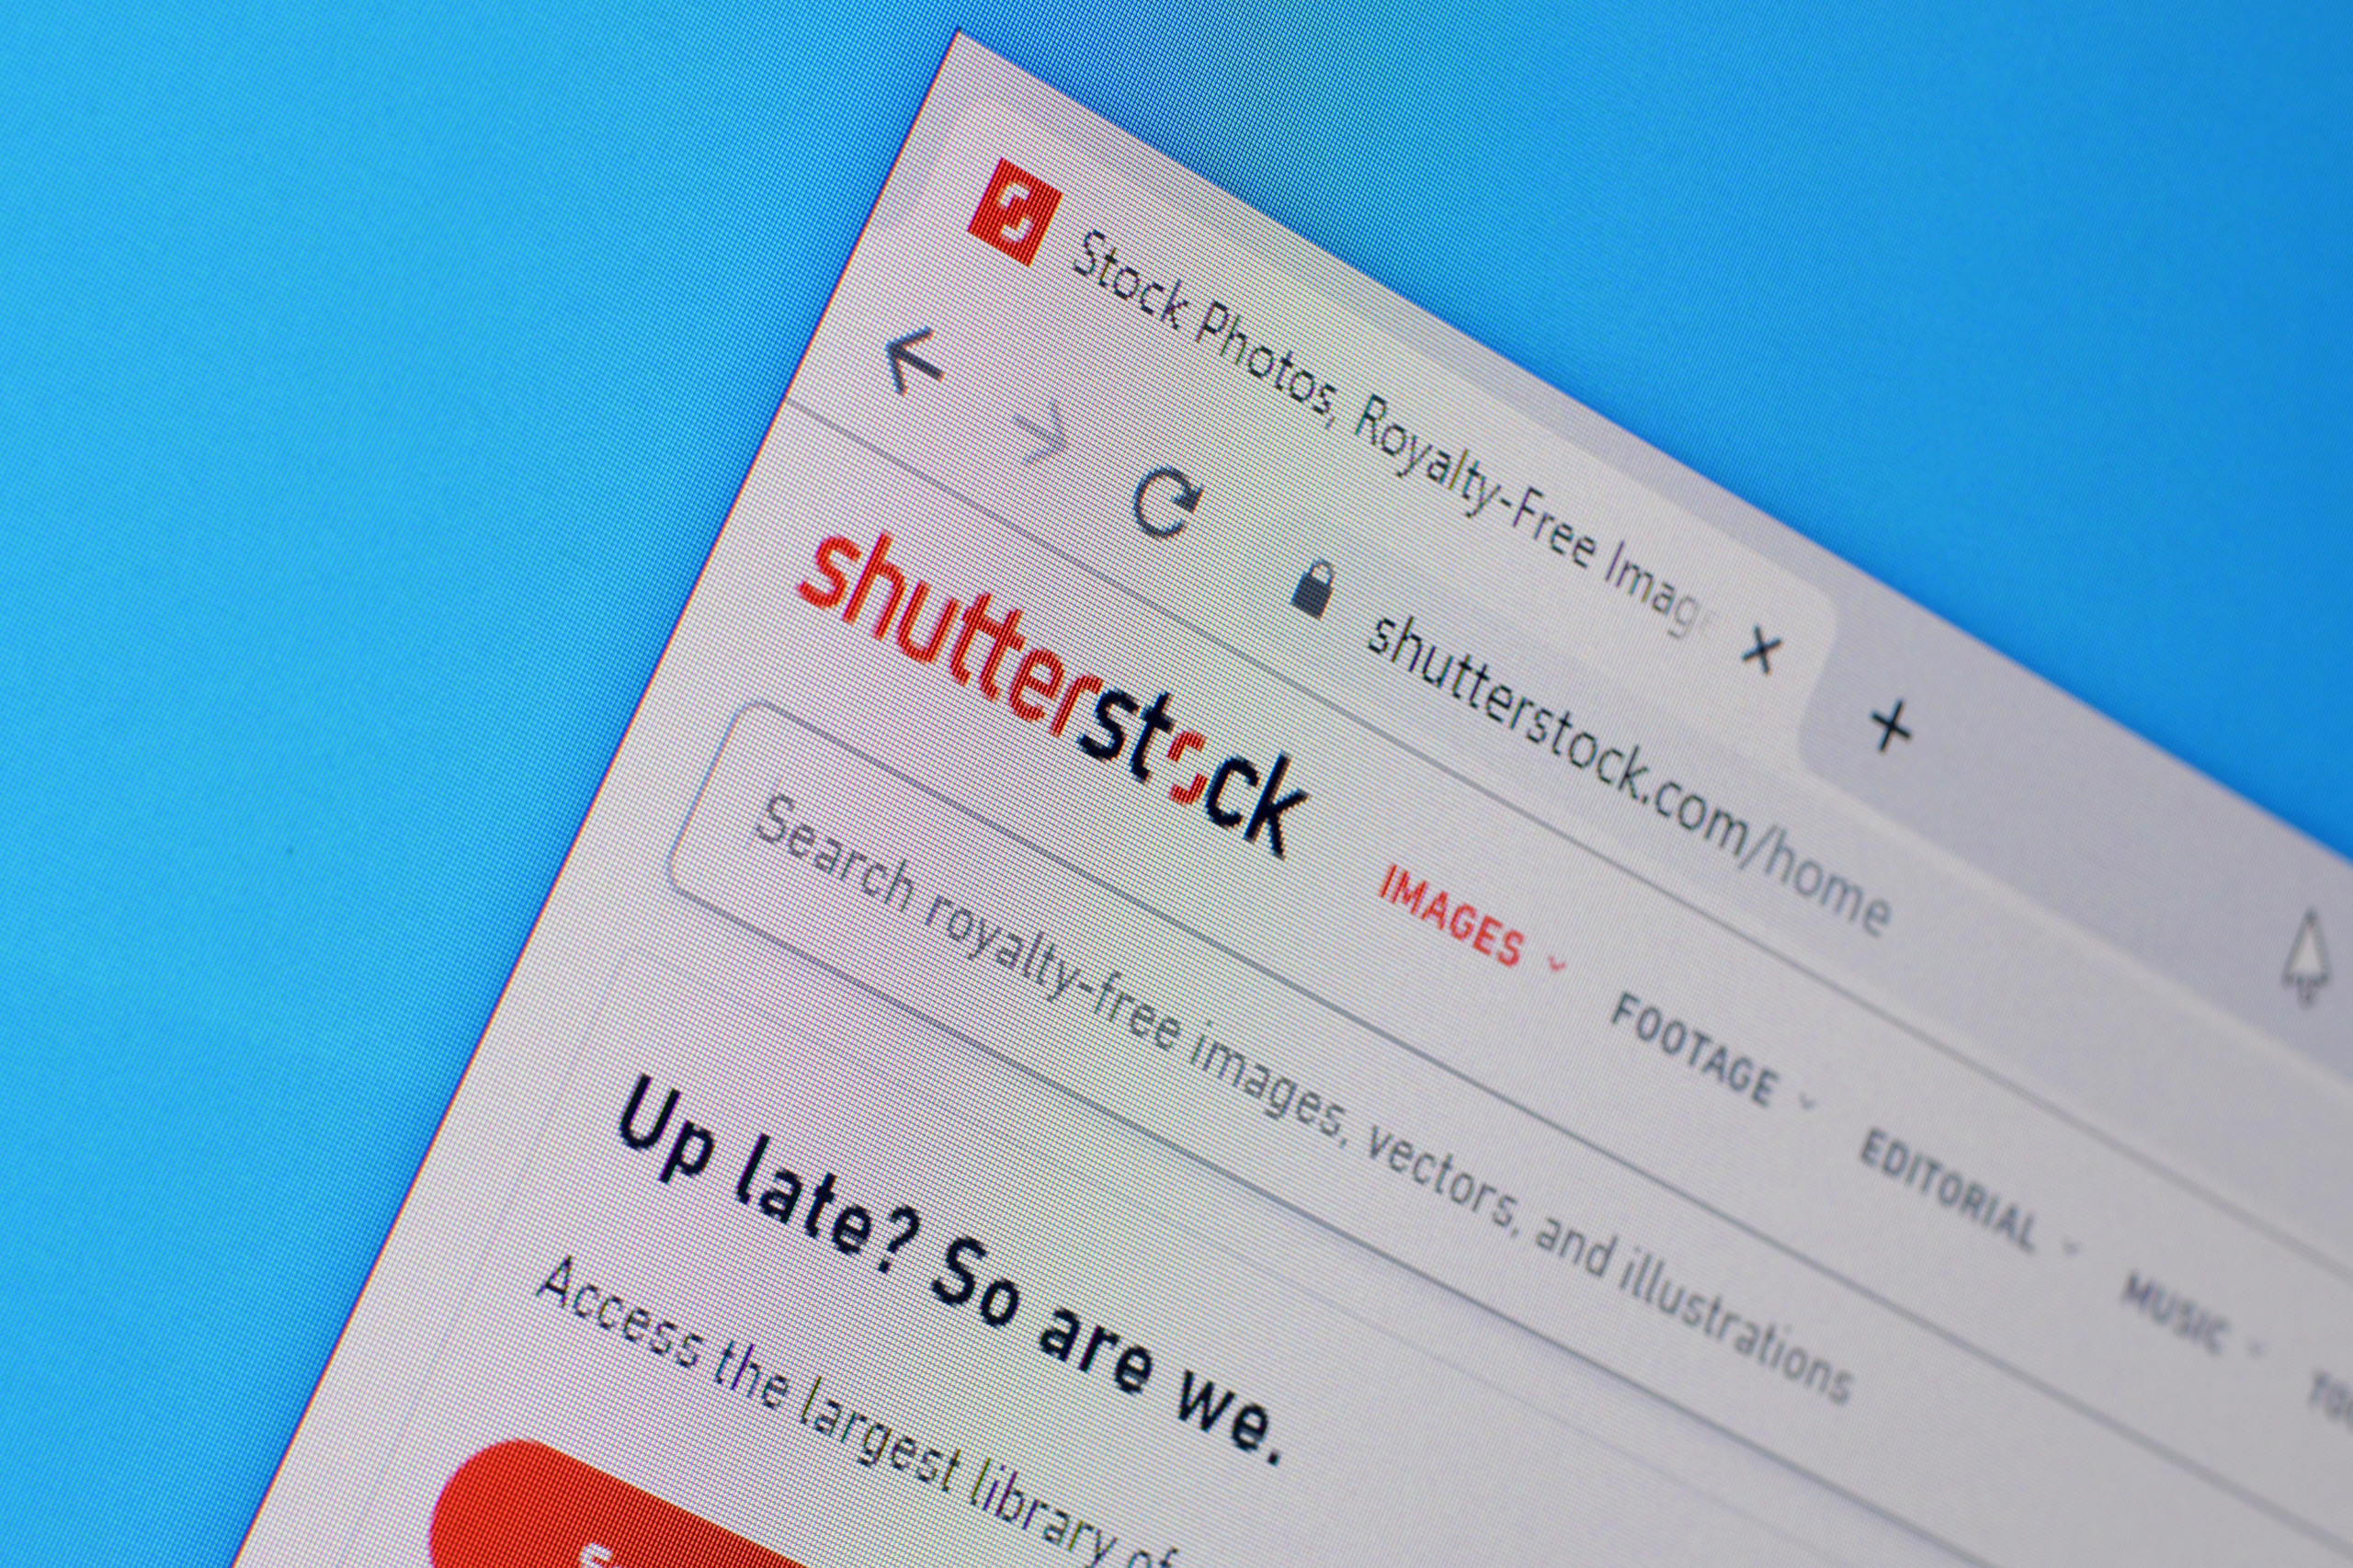 Shutterstock geht neue Wege und gibt KI-Plattform bekannt